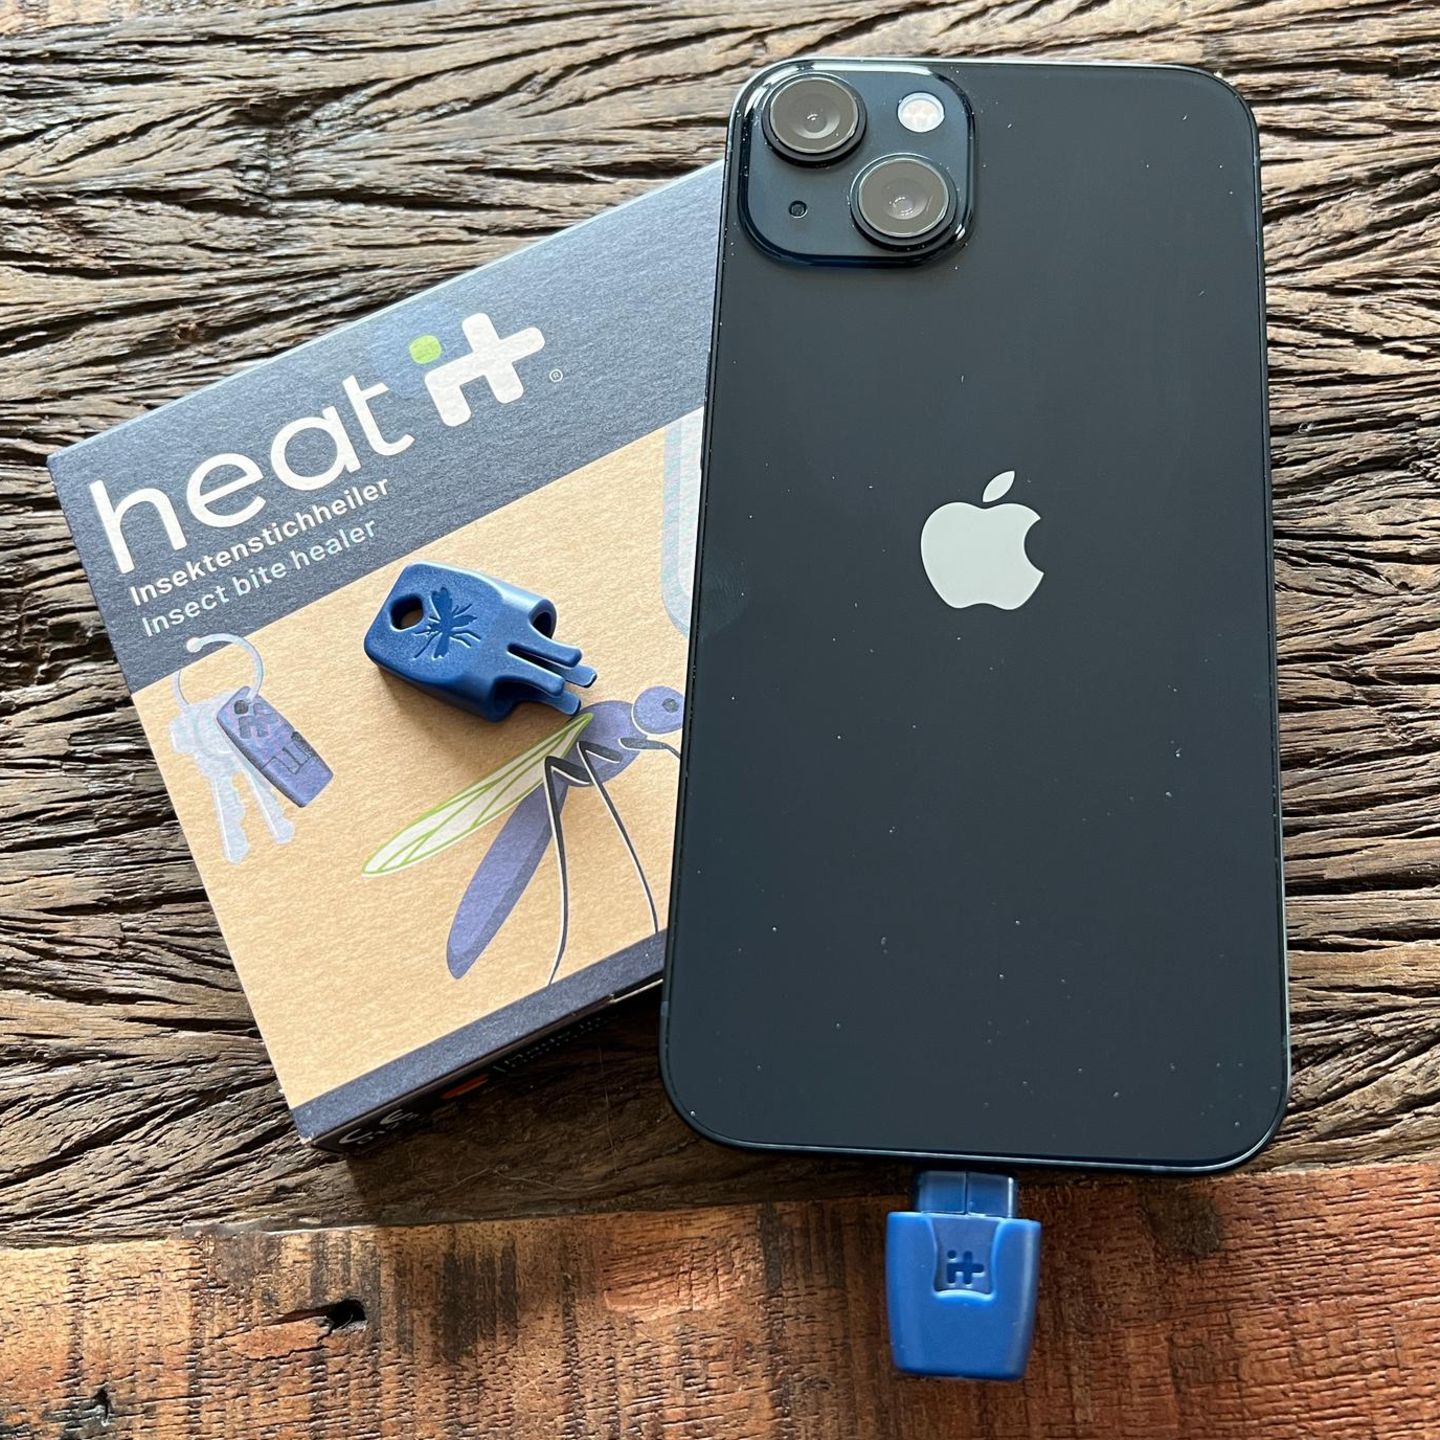 Heat-It Wärmestift für iPhone - jetzt online kaufen! 